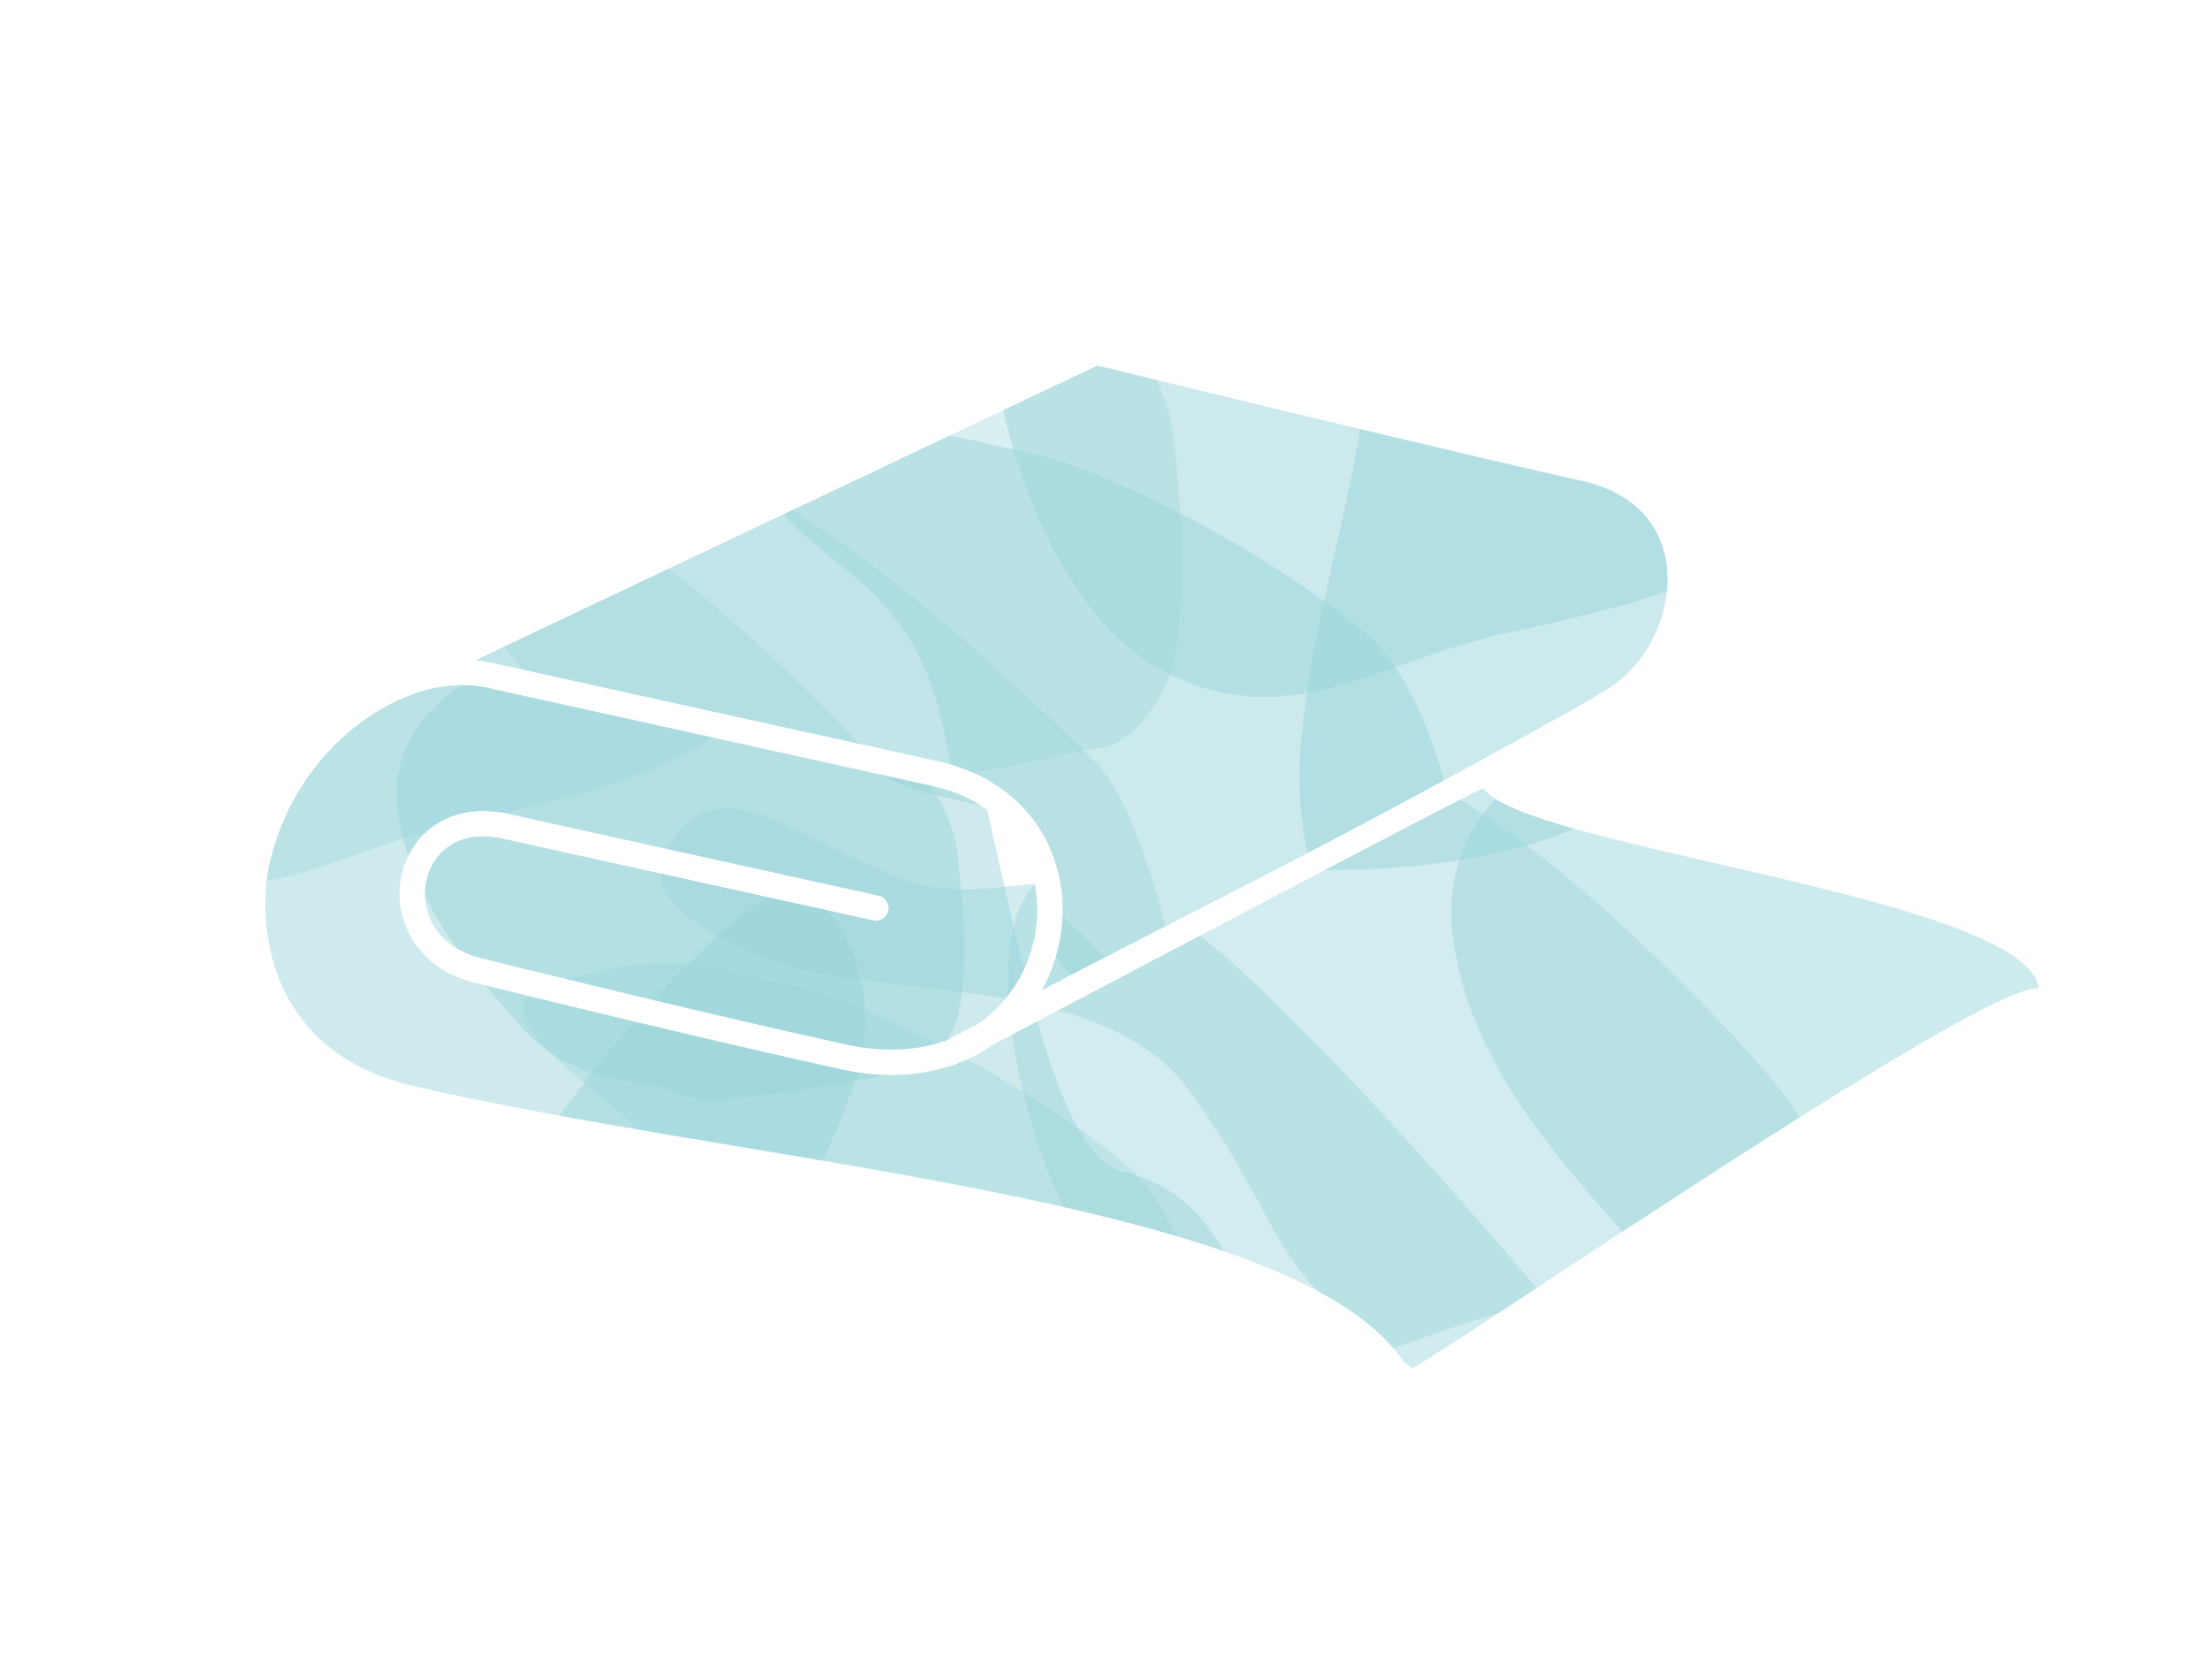 Blue blanket illustration